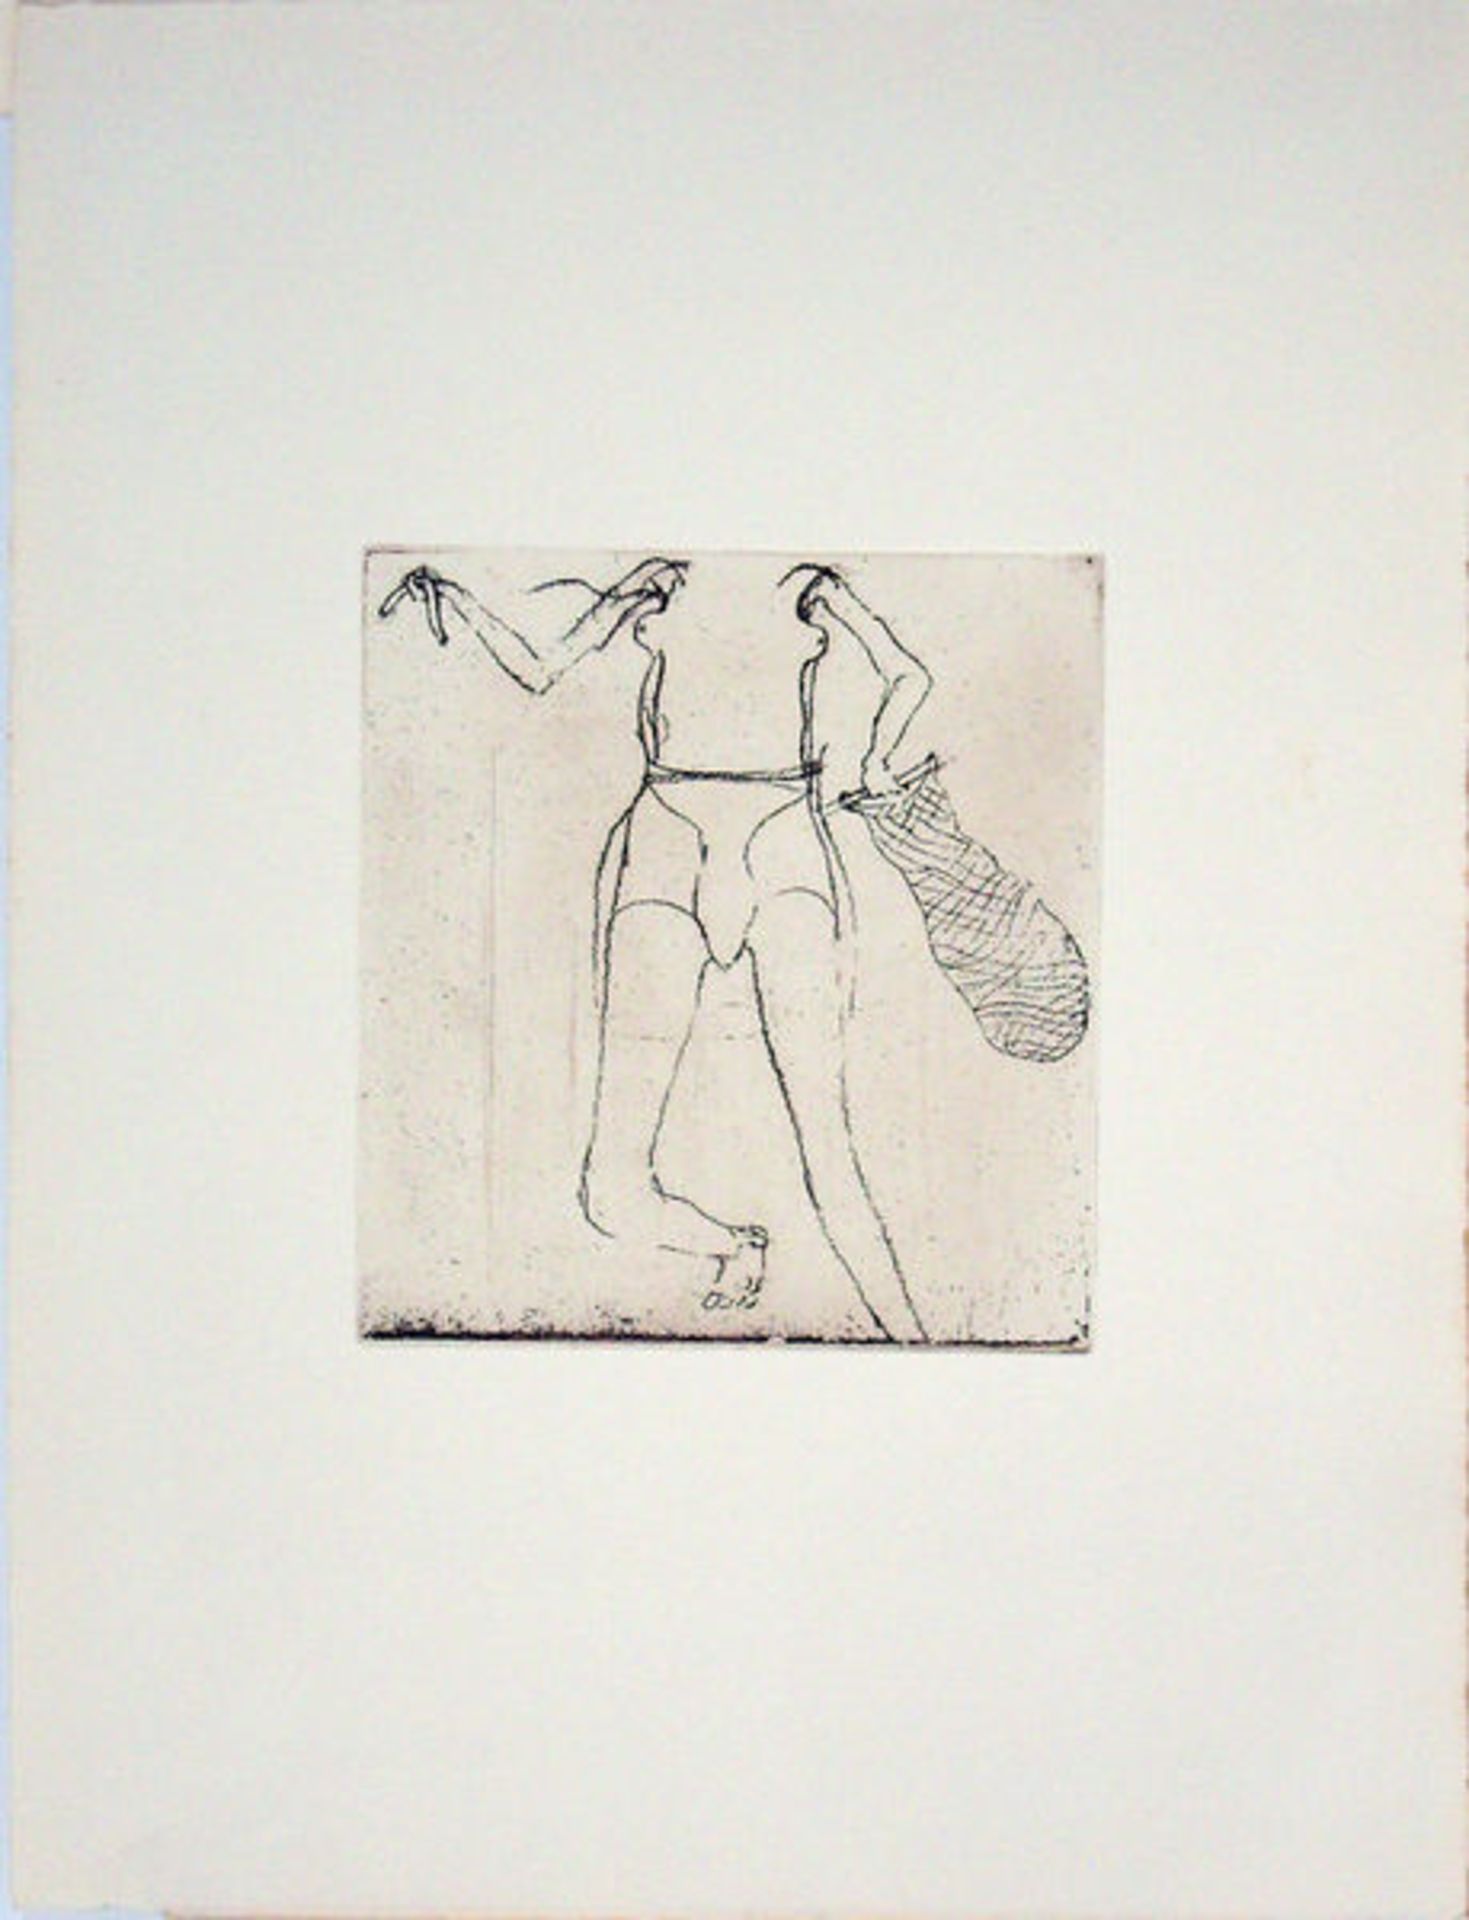 Beuys, JosephRadierung auf Bütten, 17 x 16 cmTaucherin (1982)Schellmann 433. Mit dem Prägestempel "